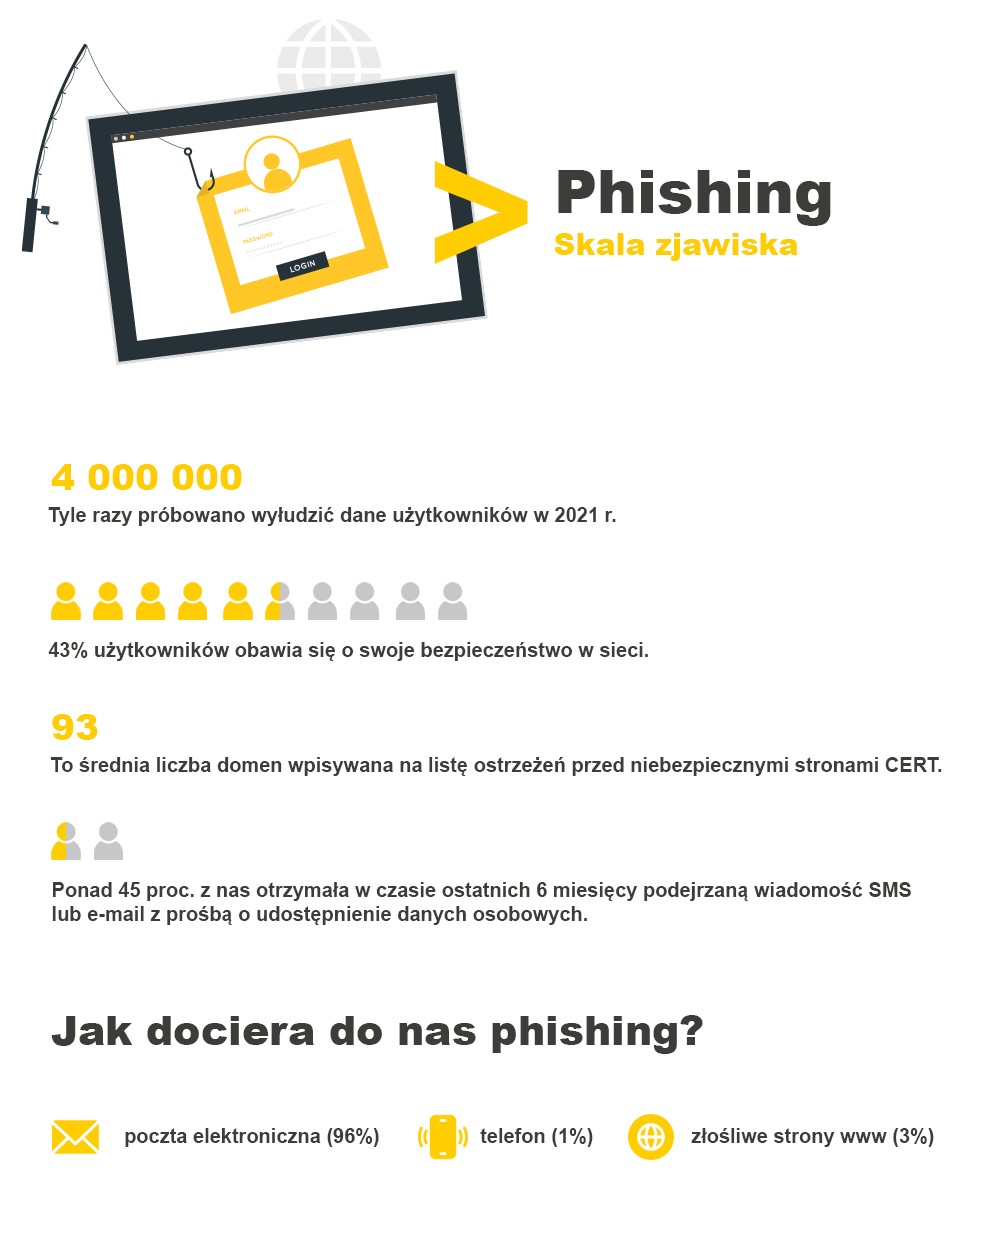 phishing skala zjawiska 2